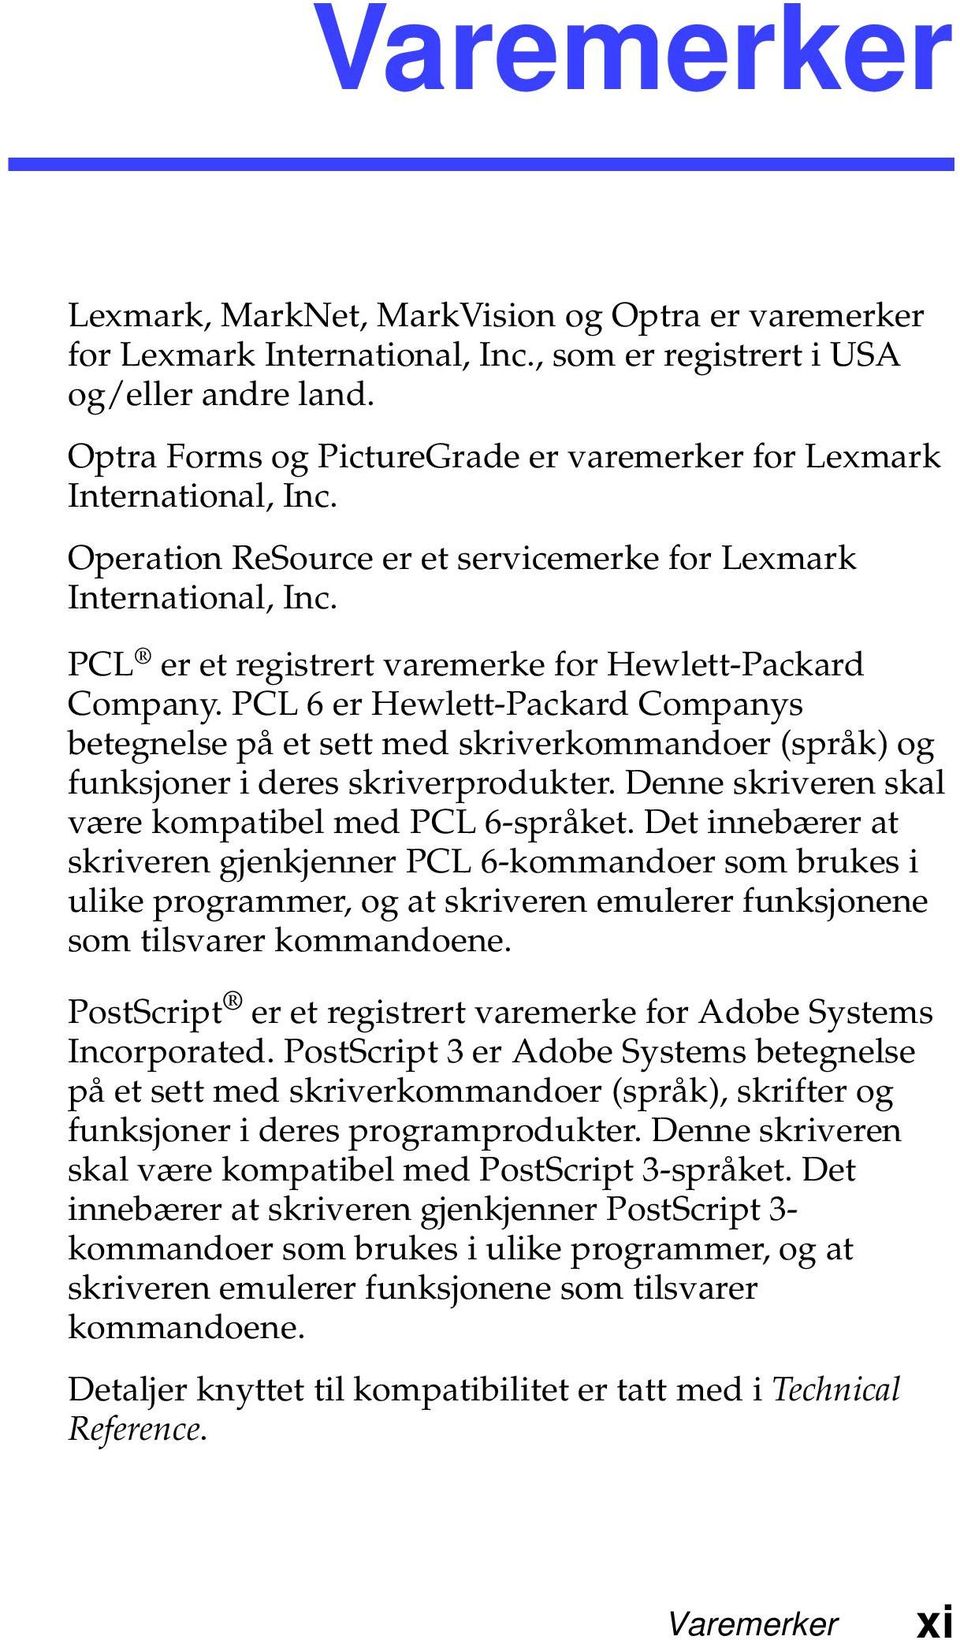 PCL er et registrert varemerke for Hewlett-Packard Company. PCL 6 er Hewlett-Packard Companys betegnelse på et sett med skriverkommandoer (språk) og funksjoner i deres skriverprodukter.